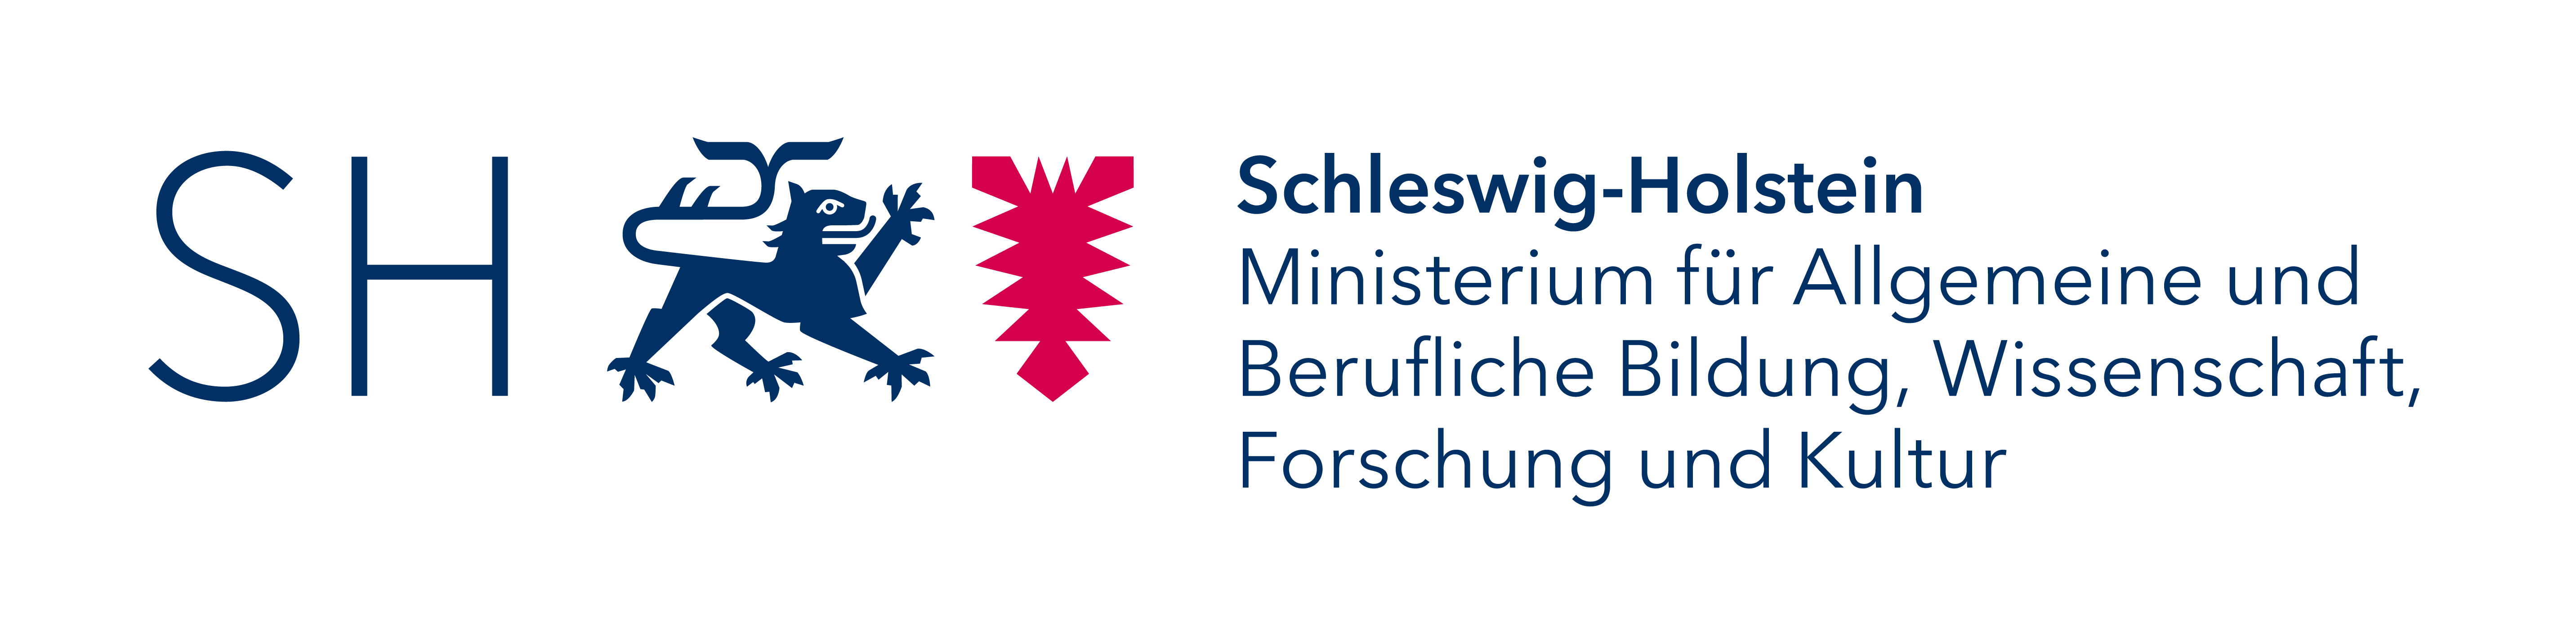 Logo des Ministeriums für Allgemeine und Berufliche Bildung, Wissenschaft, Forschung und Kultur